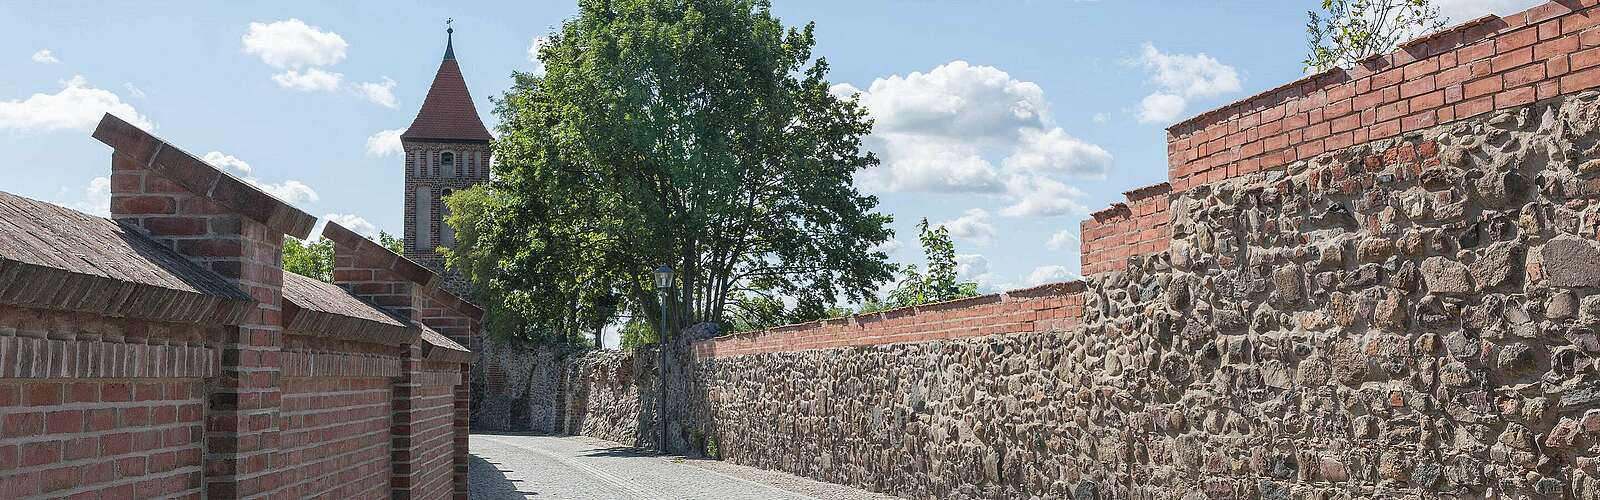 Stadtmauer von Jüterbog,
        
    

        Foto: TMB-Fotoarchiv/Steffen Lehmann